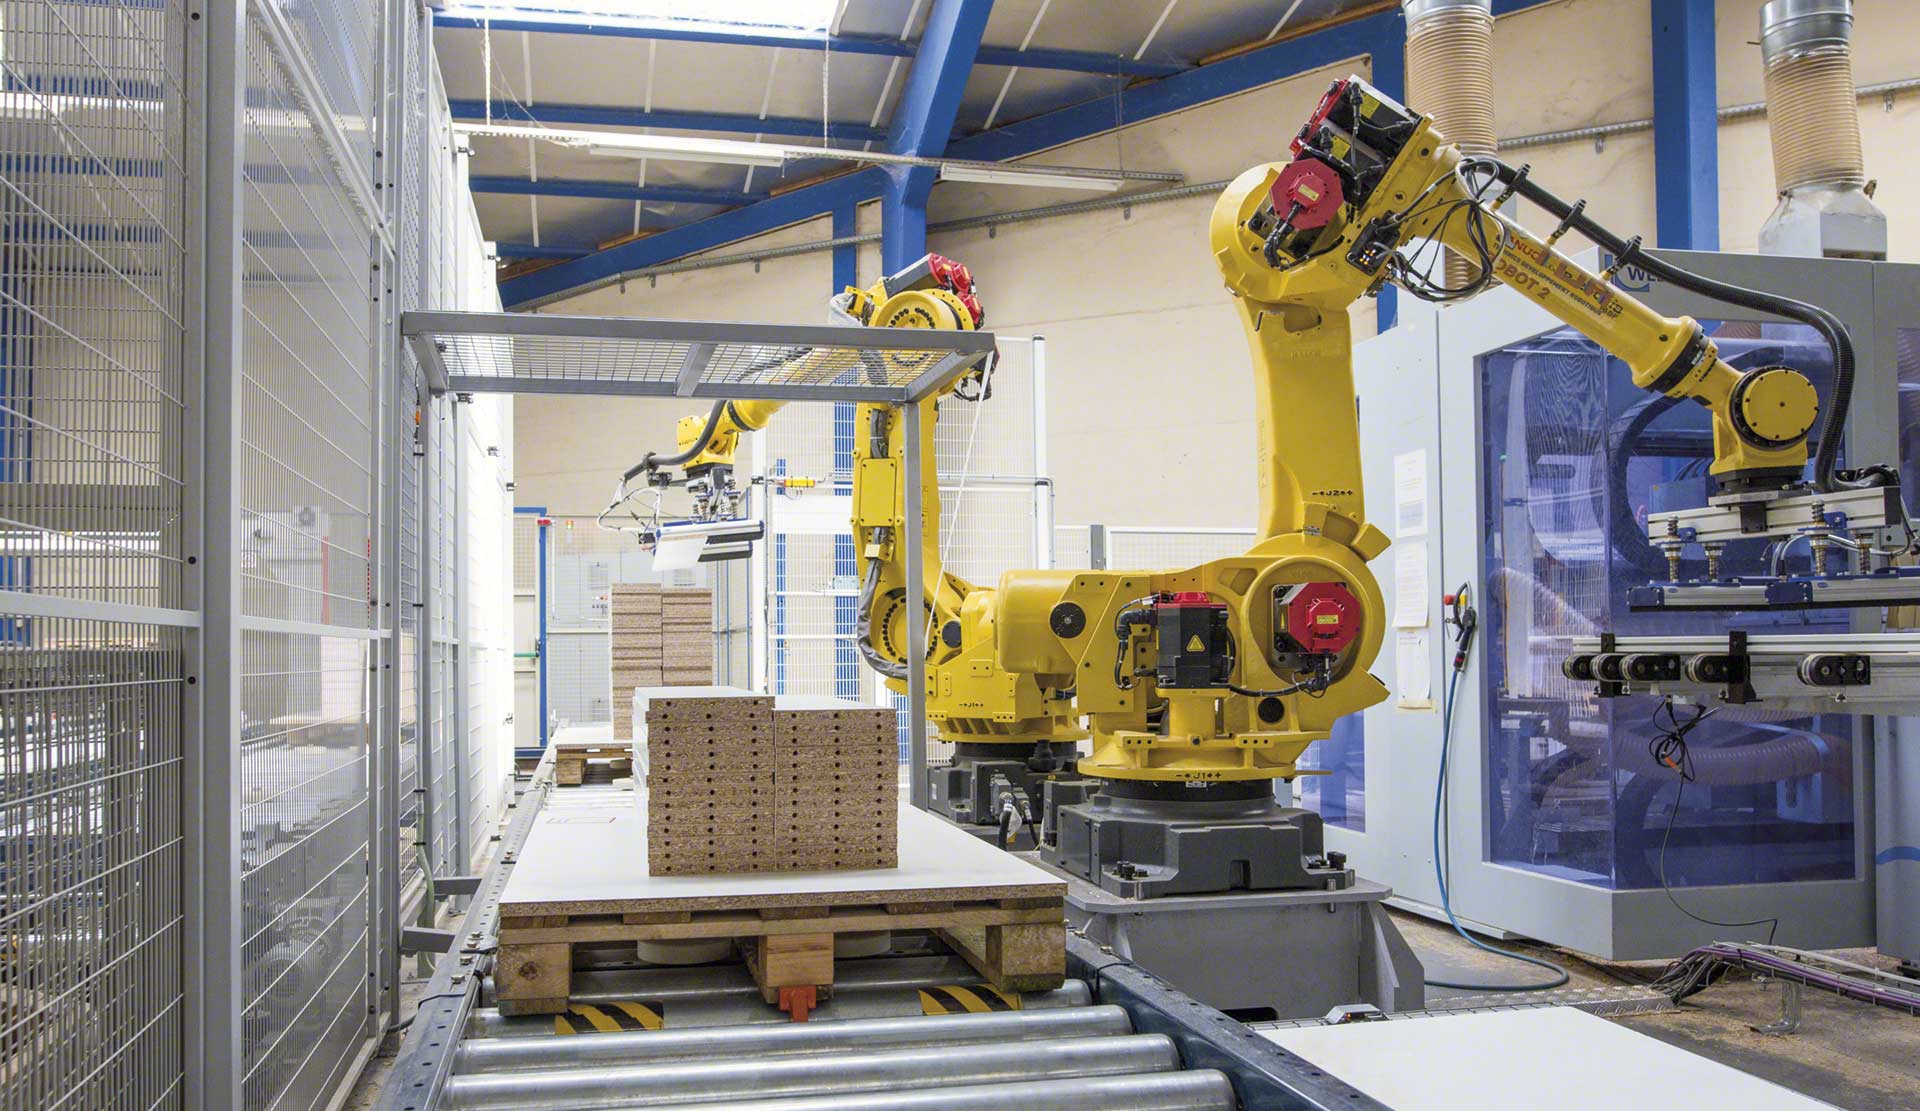 El brazo robótico industrial toma impulso en el almacén